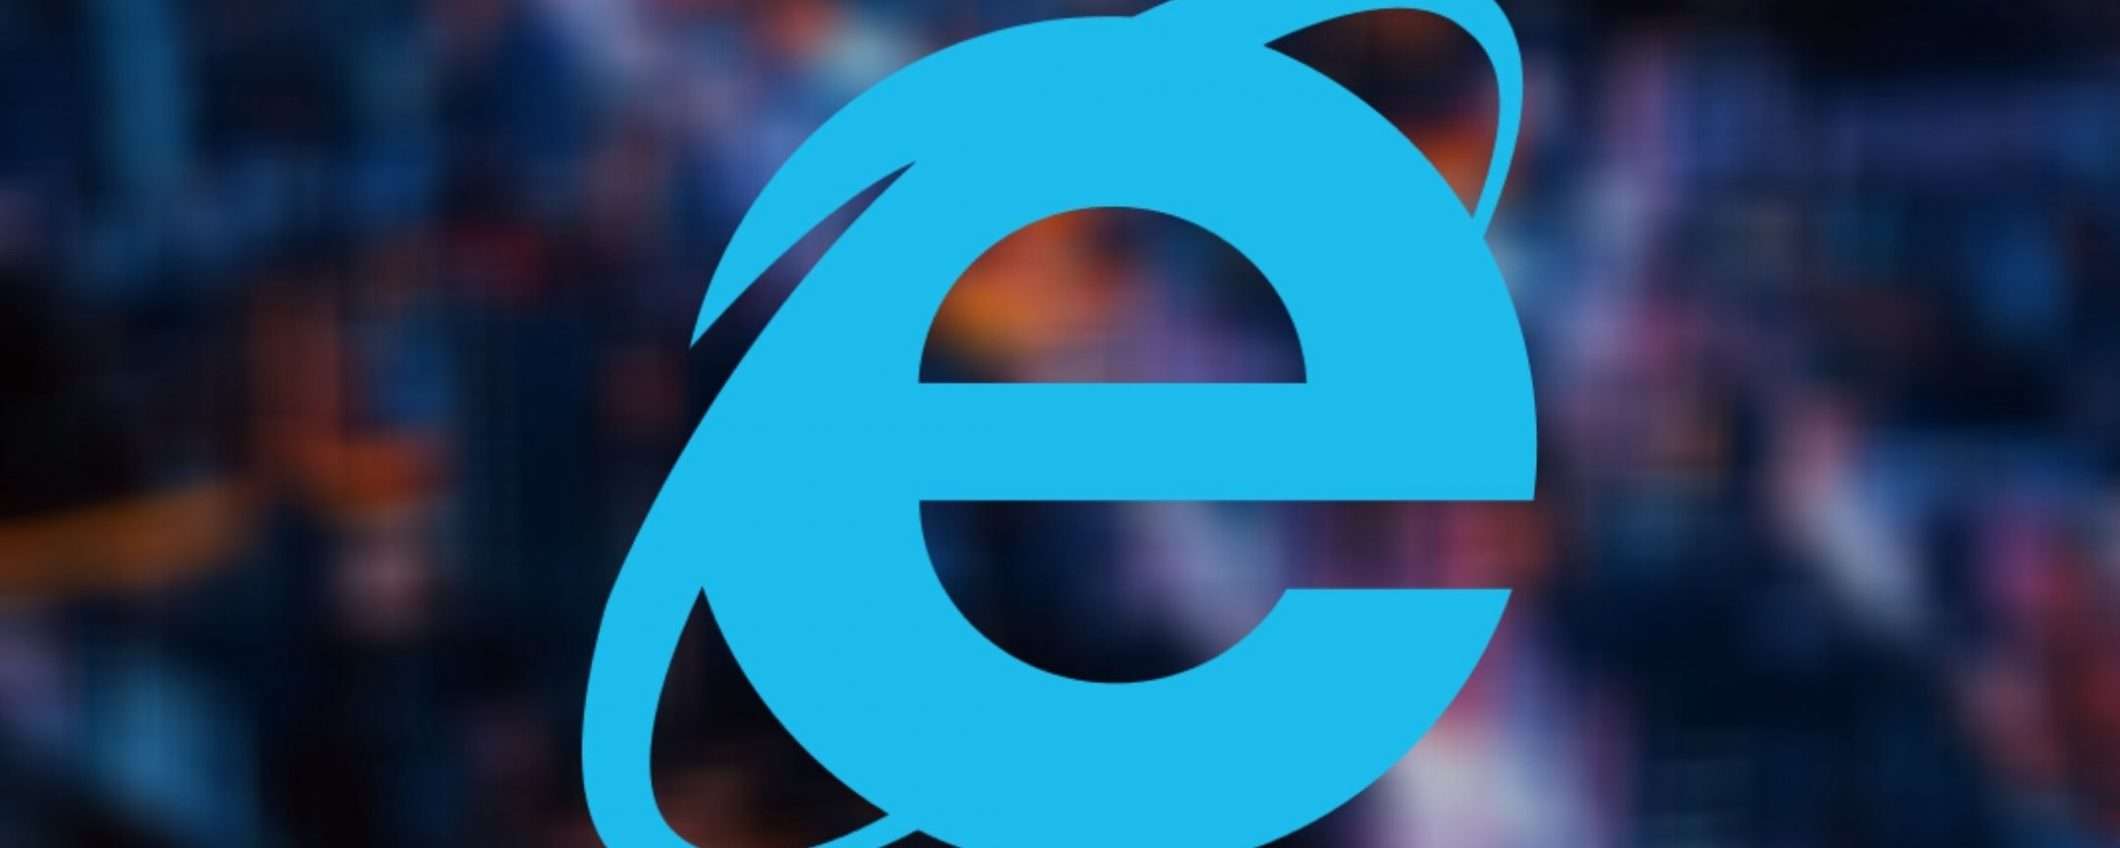 Internet Explorer: stop al supporto da agosto 2021